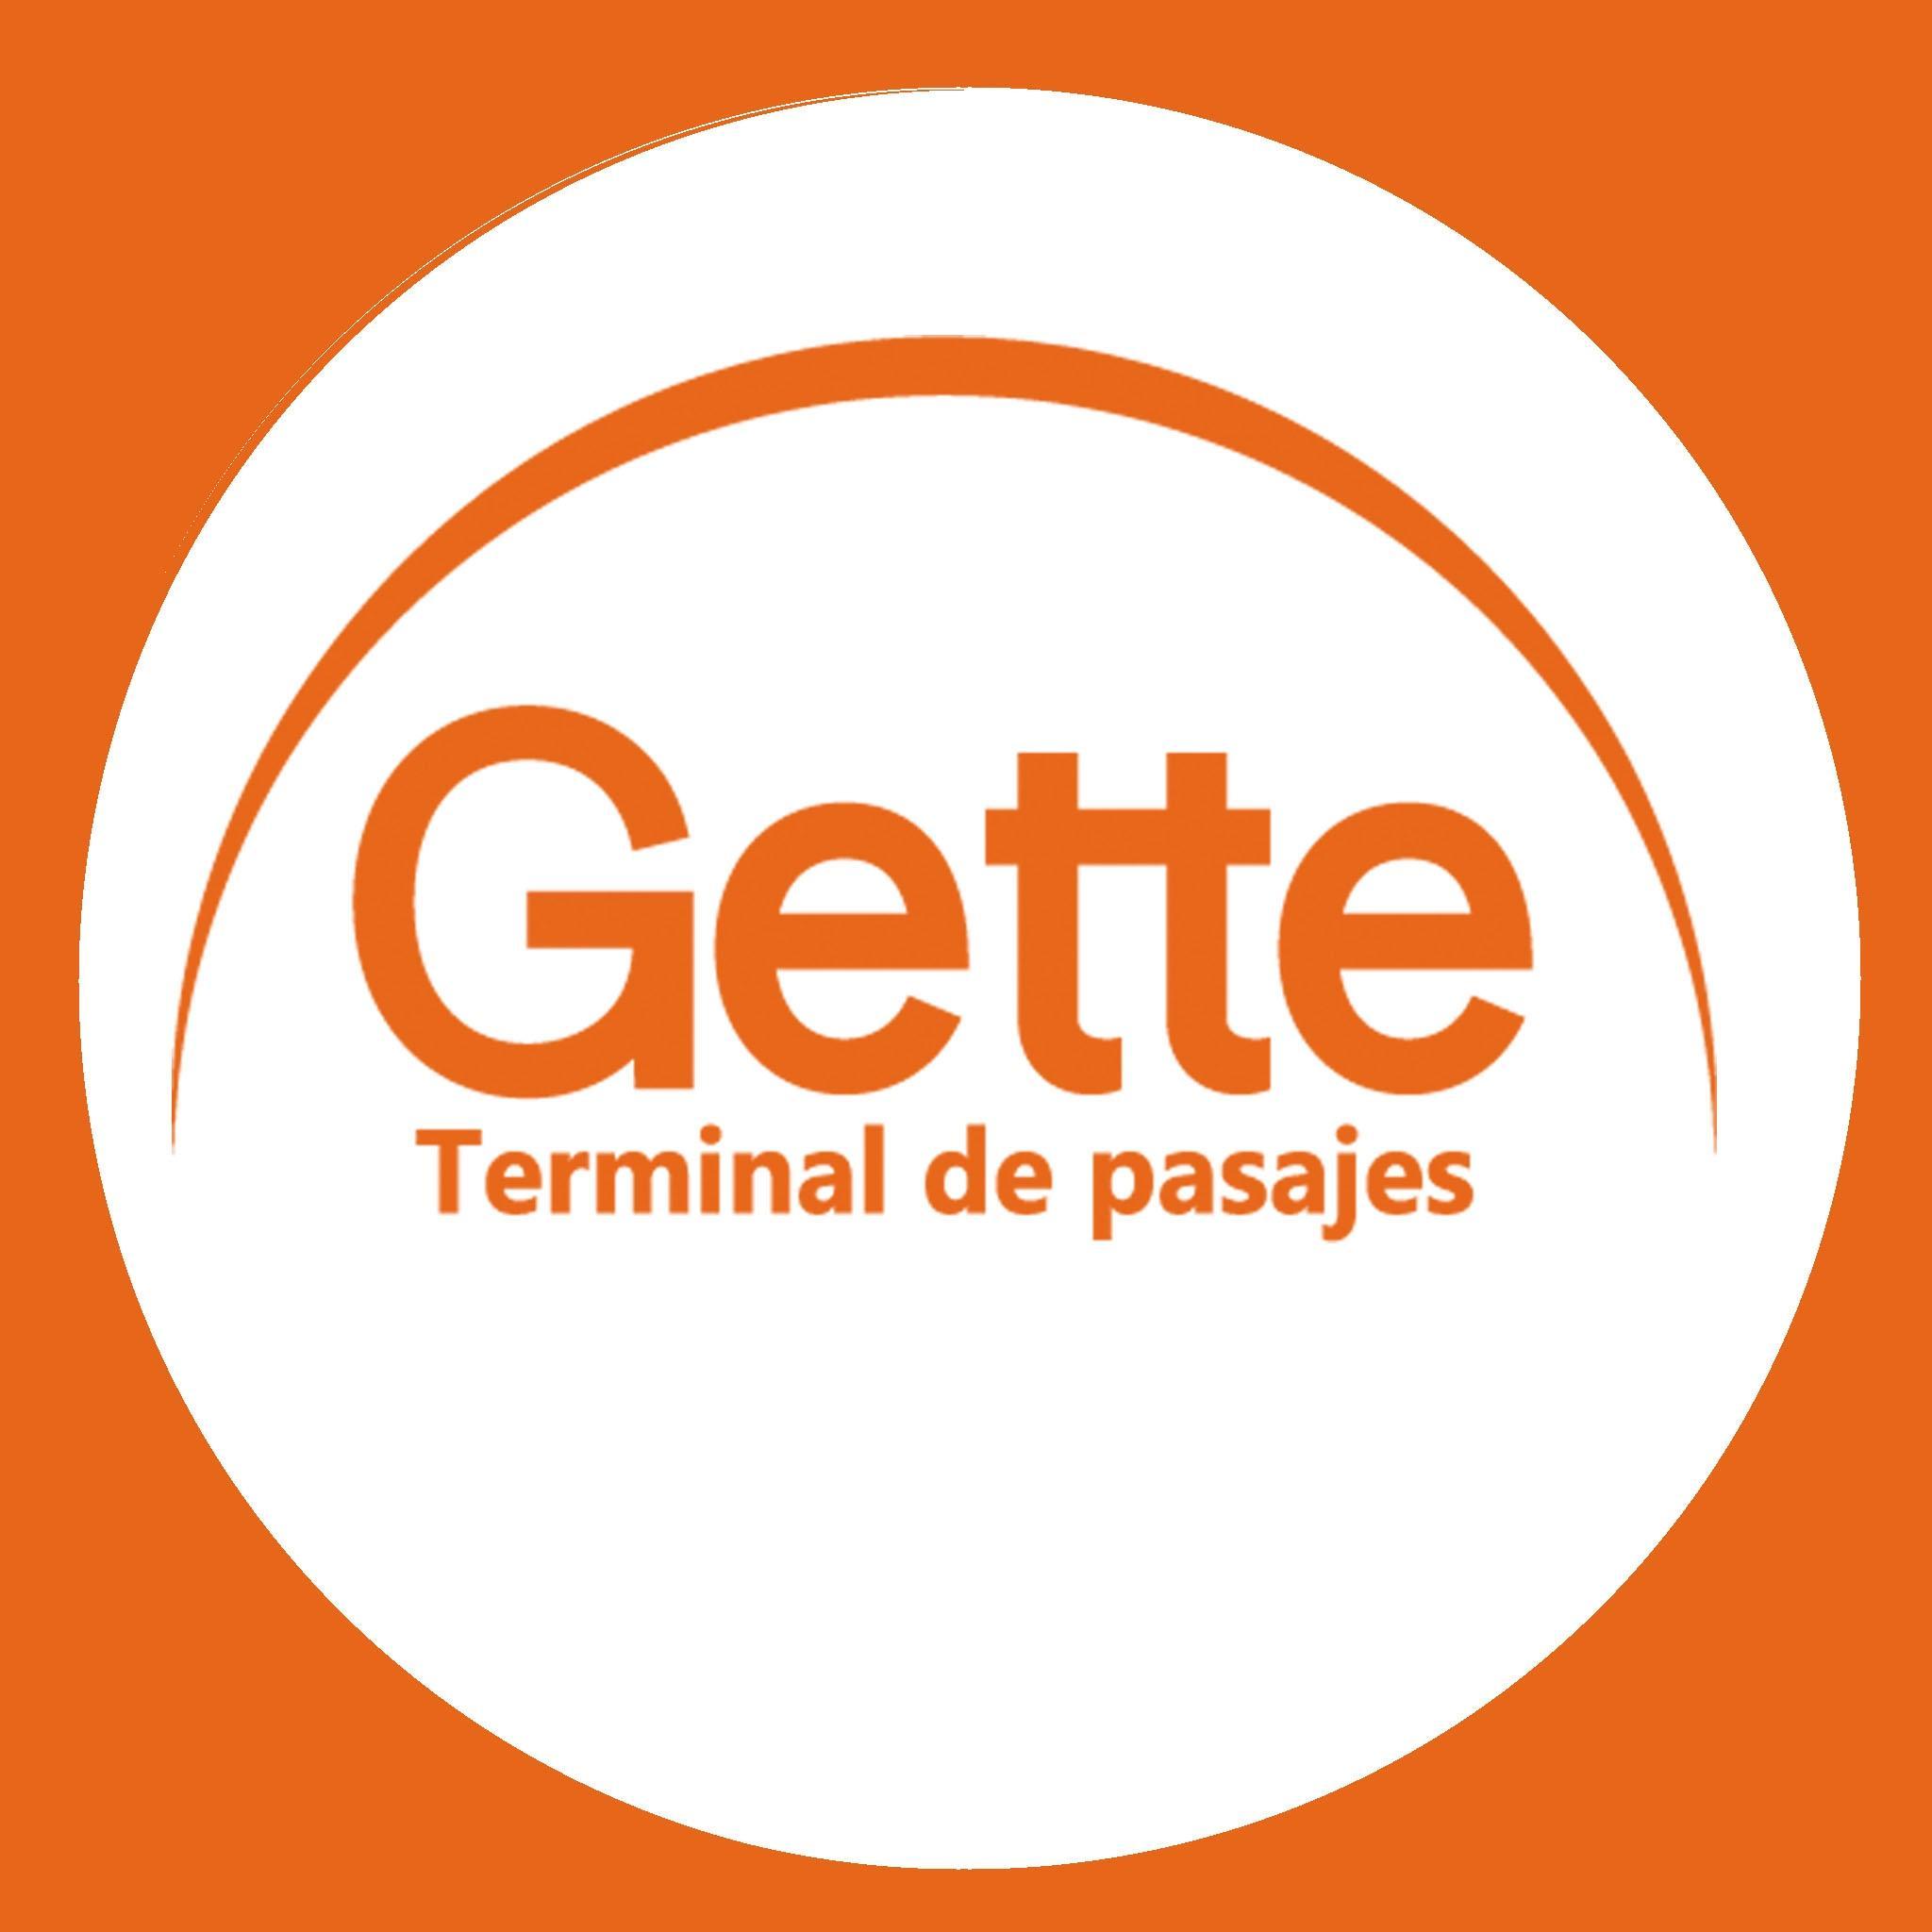 Gette Terminal de pasajes, 25 años de trayectoria en el servicio de venta de pasajes de media y larga distancia.